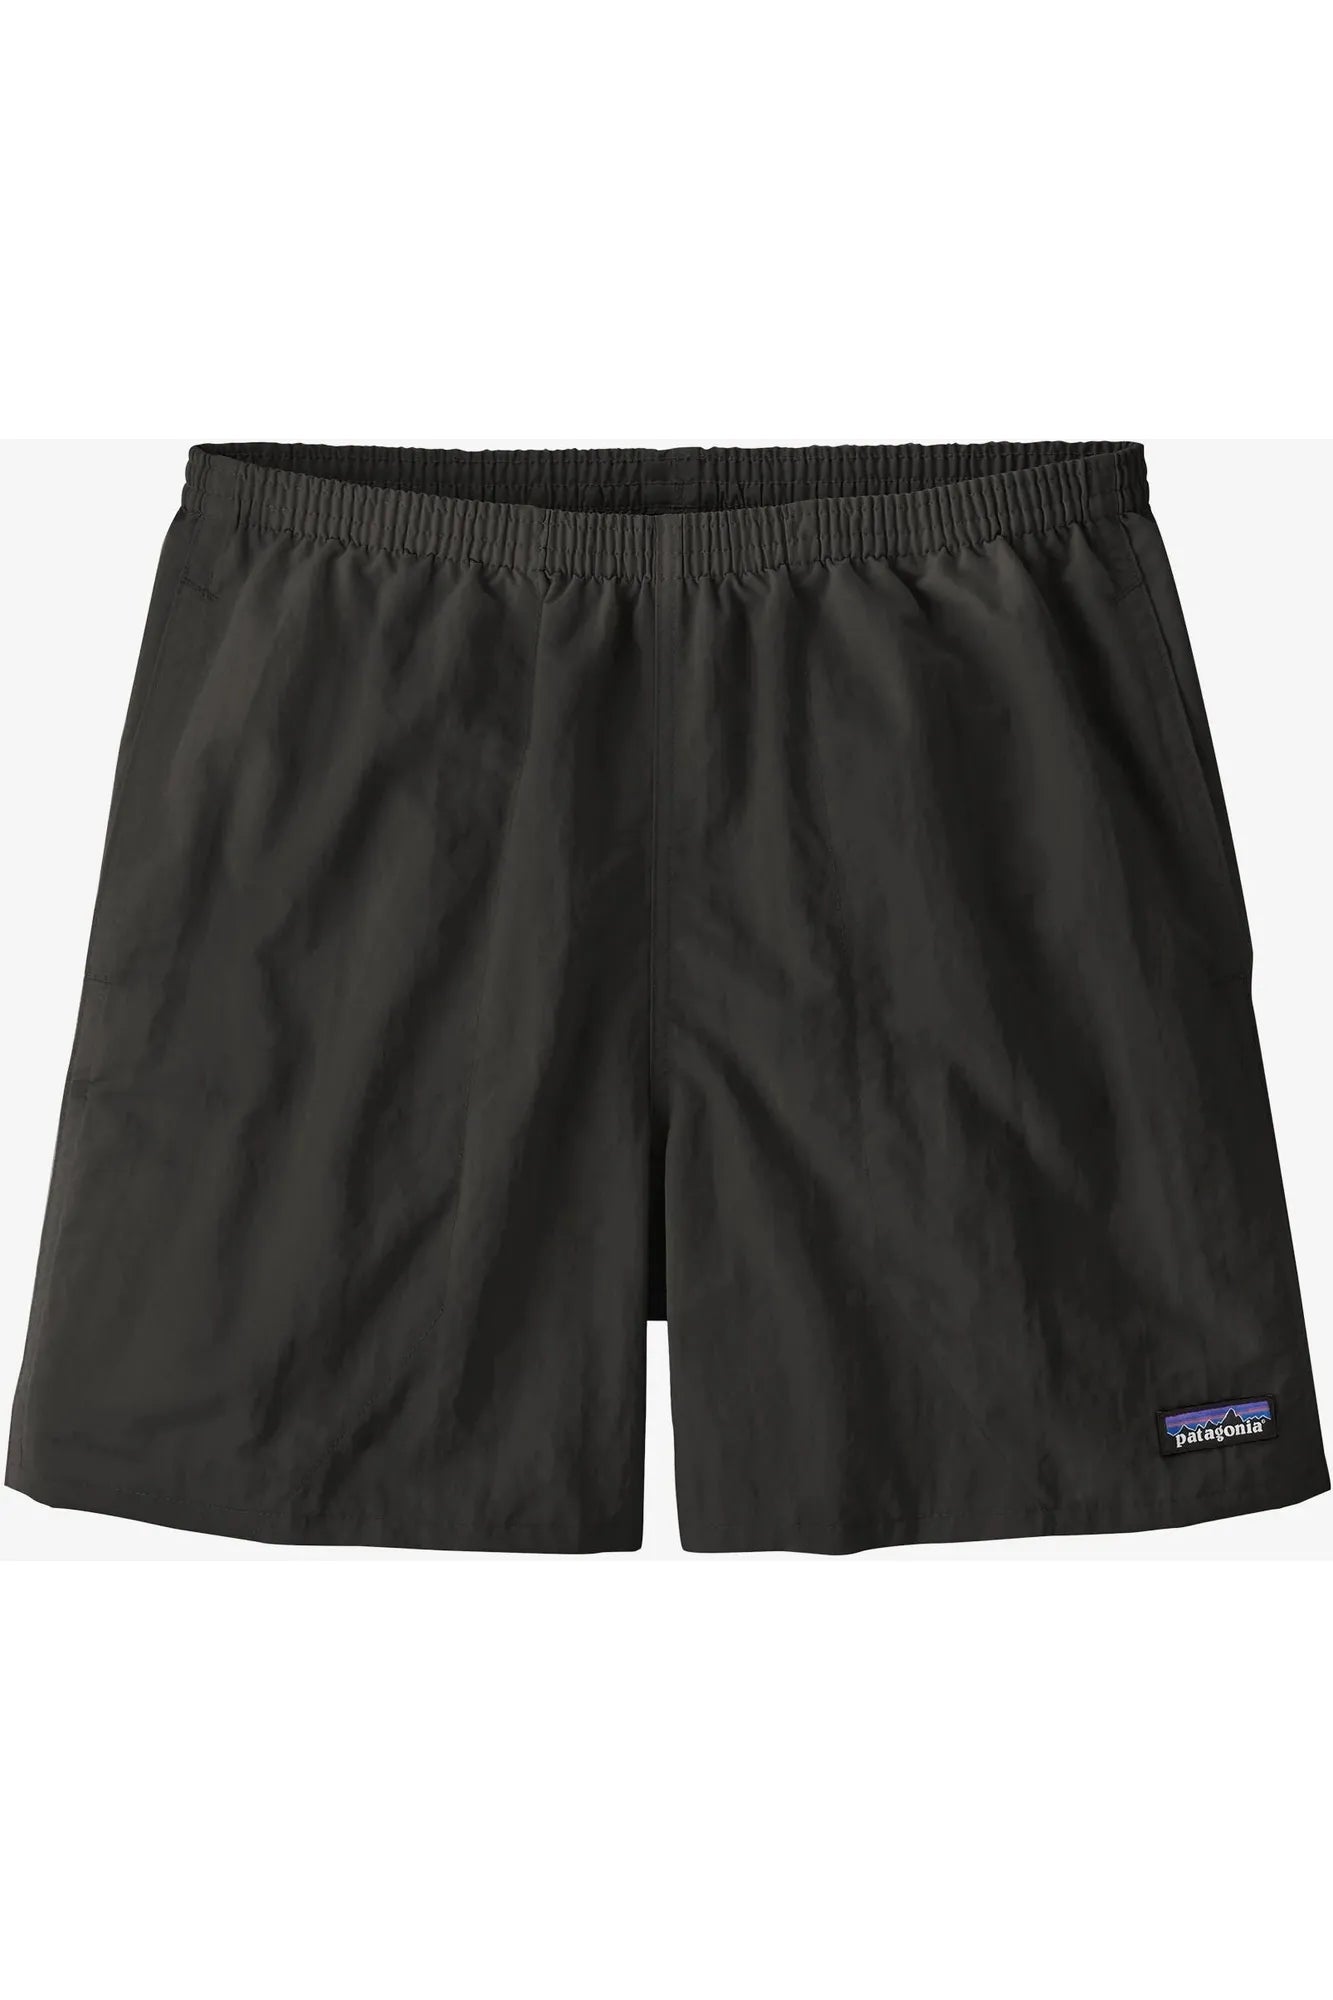 Patagonia Mens Baggies Shorts - 5in - Black Black S